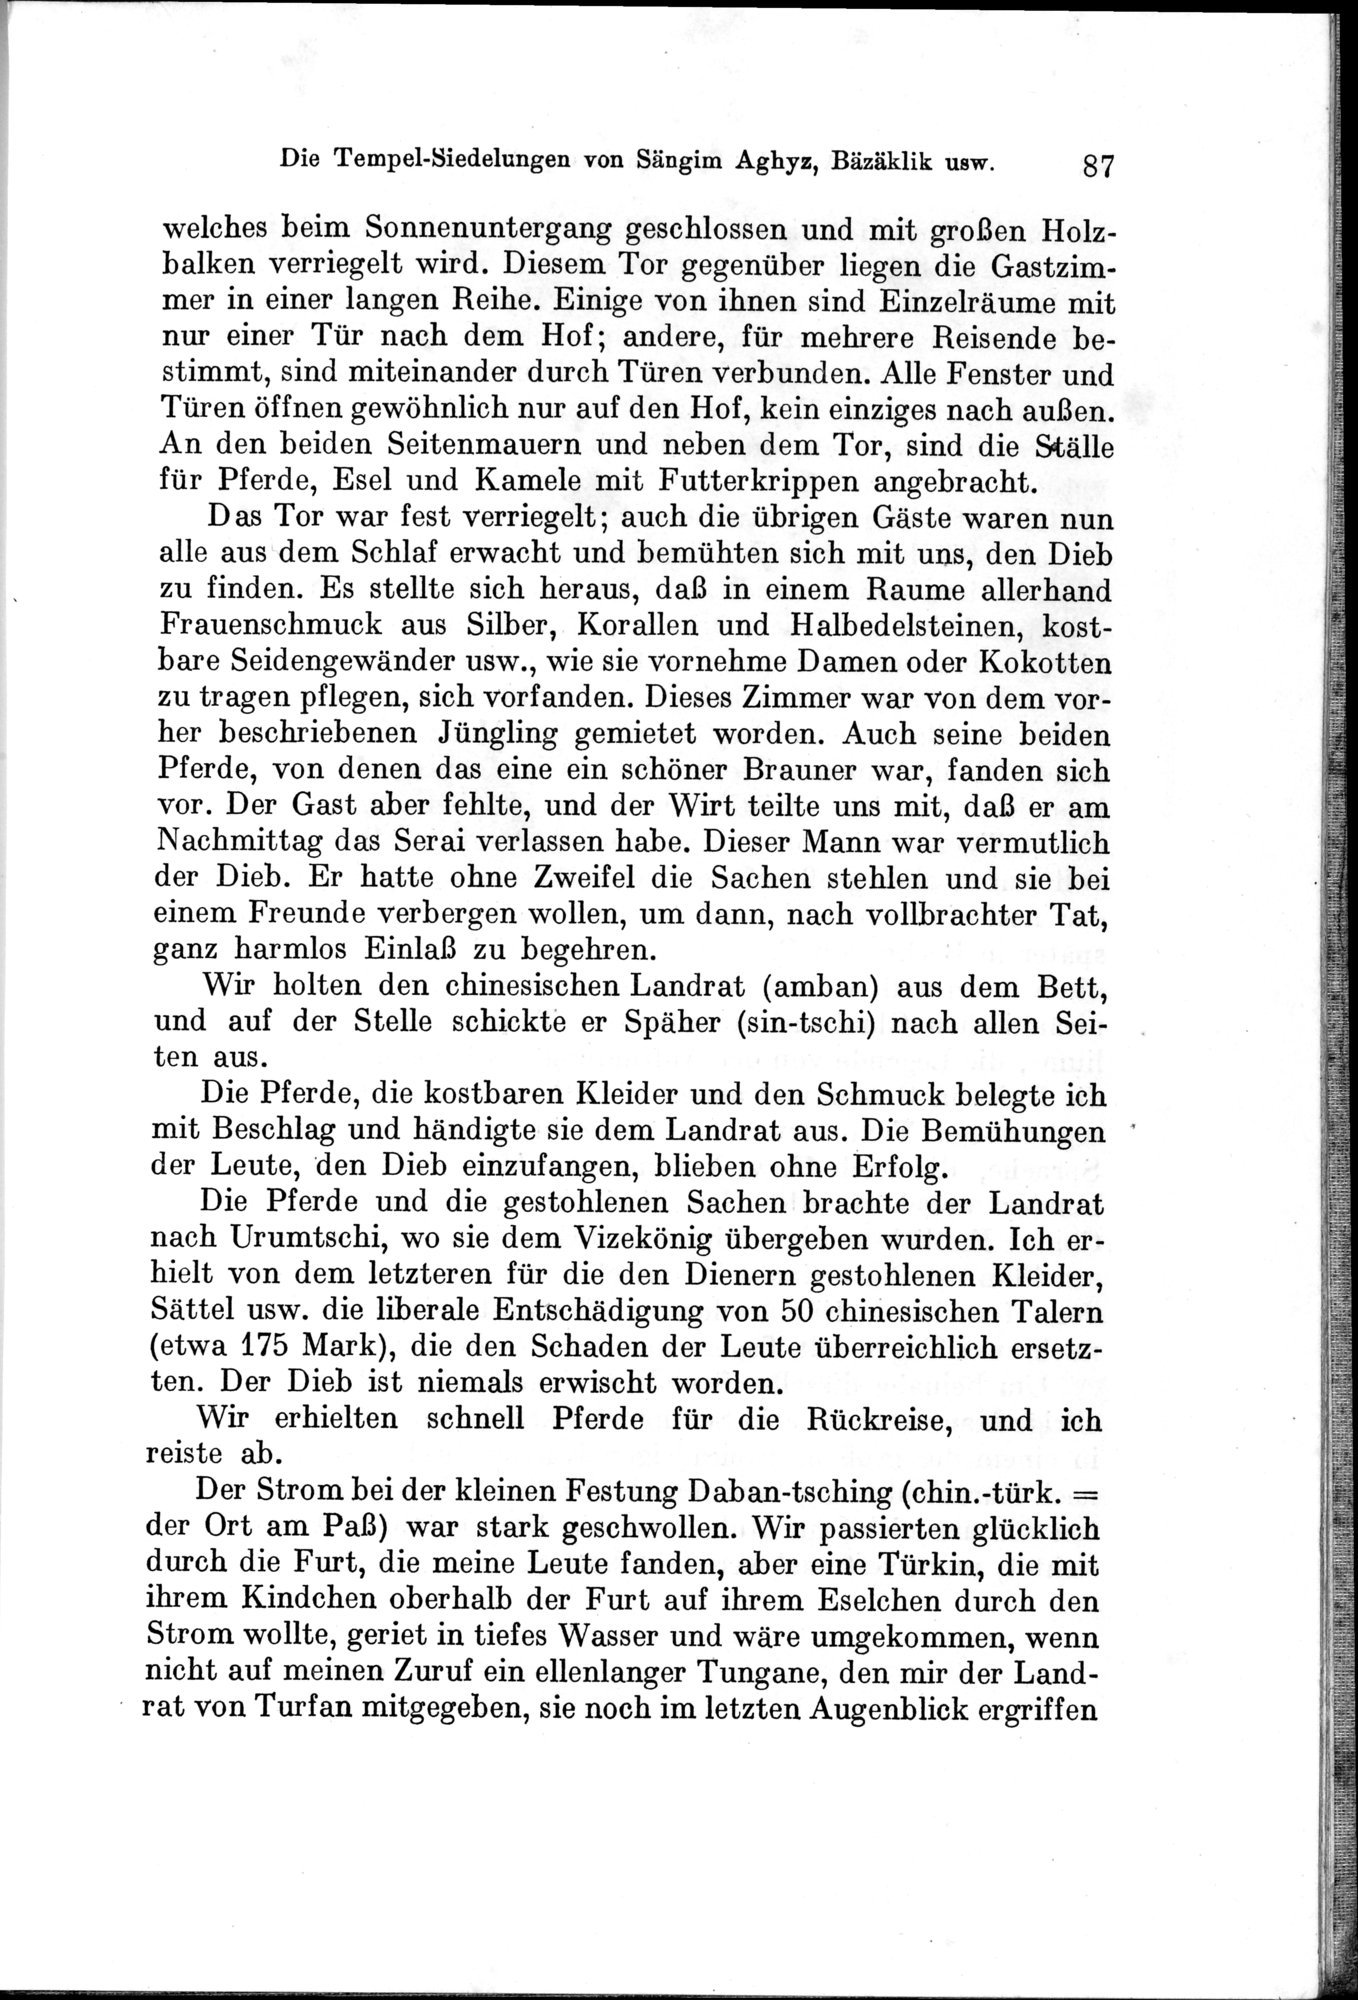 Auf Hellas Spuren in Ostturkistan : vol.1 / Page 127 (Grayscale High Resolution Image)